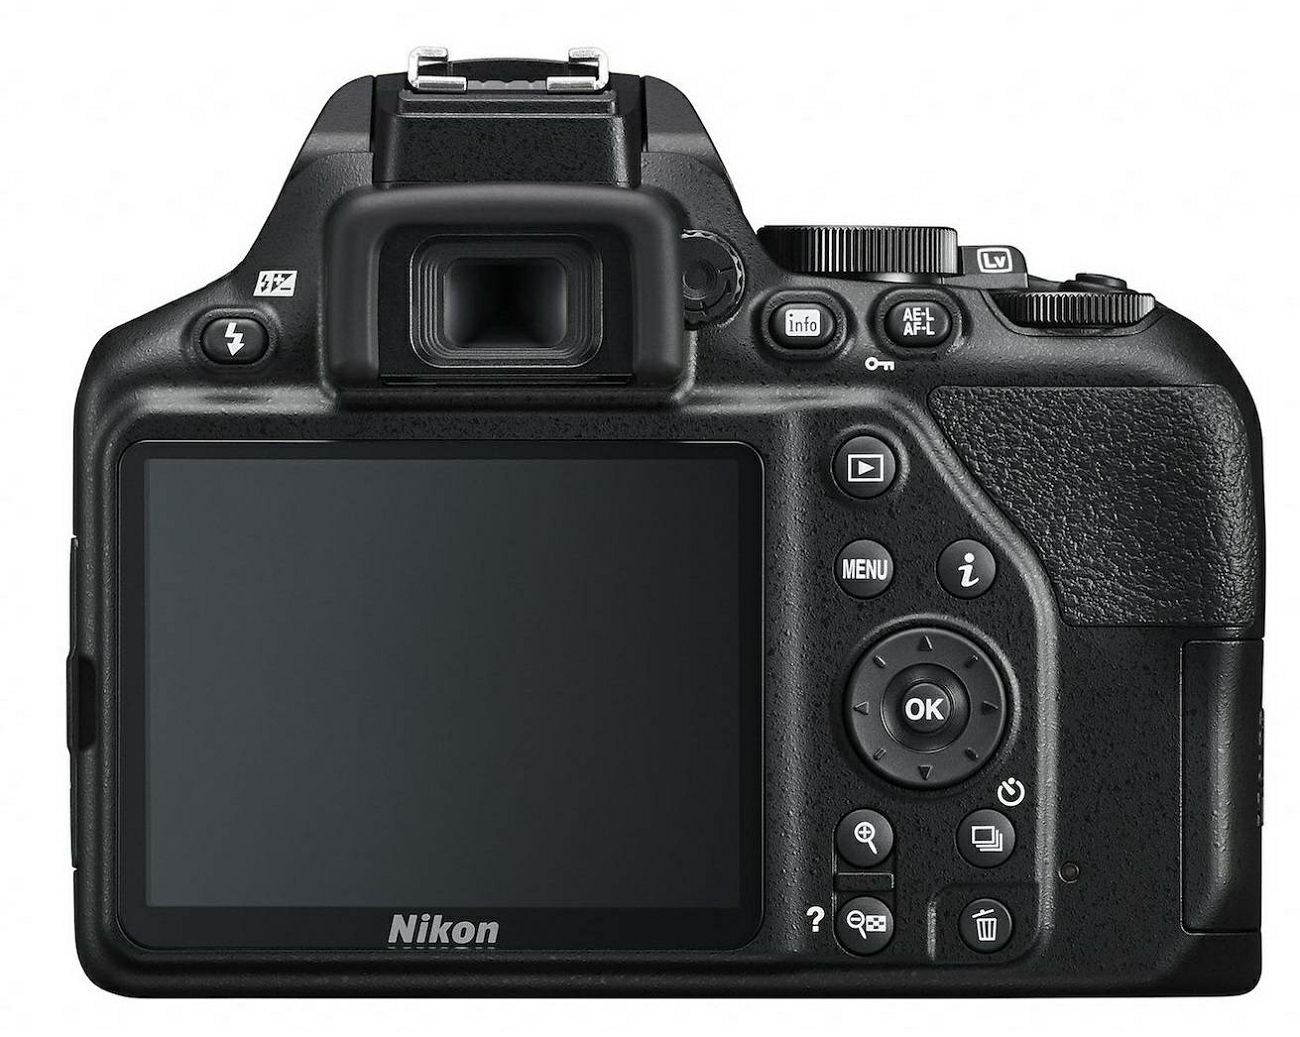 Nikon D3500 + AF-S 35mm f/1.8G DX KIT DSLR digitalni fotoaparat i objektiv Nikkor 35mm F1.8 (VBA550K007)